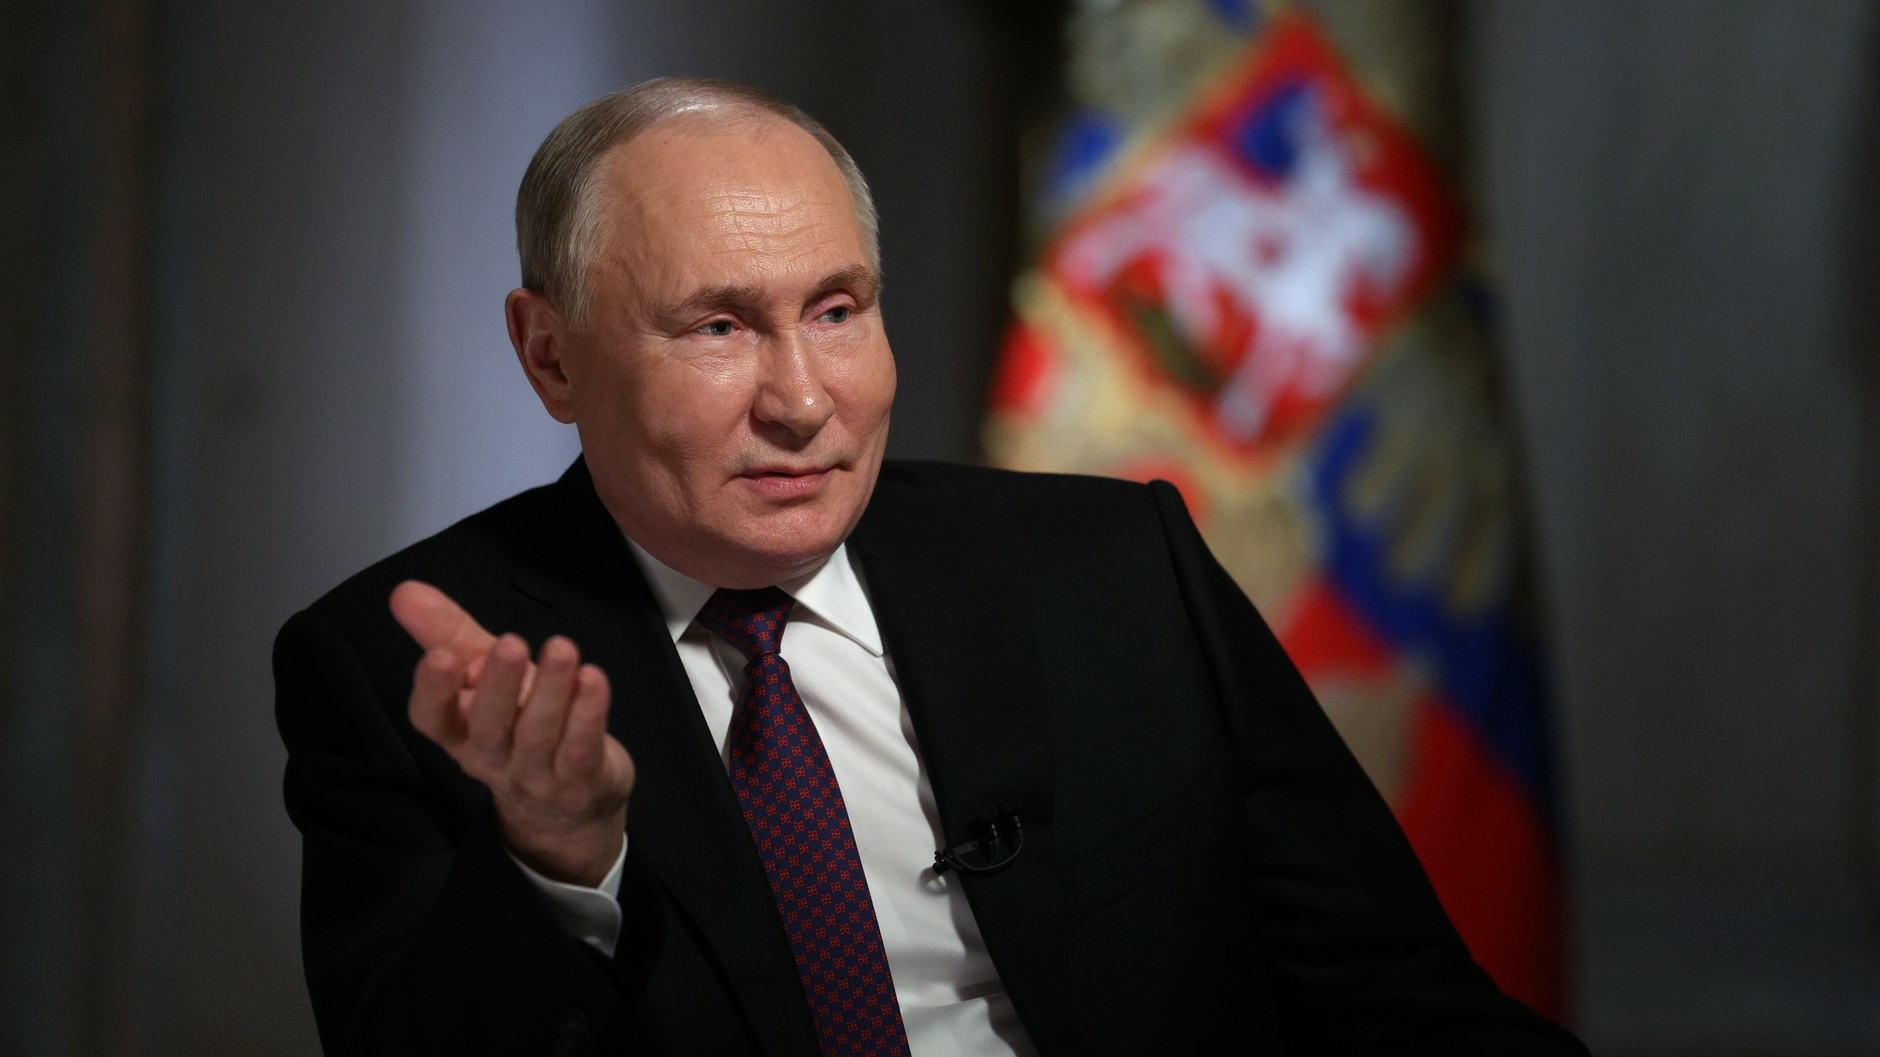 ФОМ: 82 % россиян доверяют Путину и положительно оценивают его работу